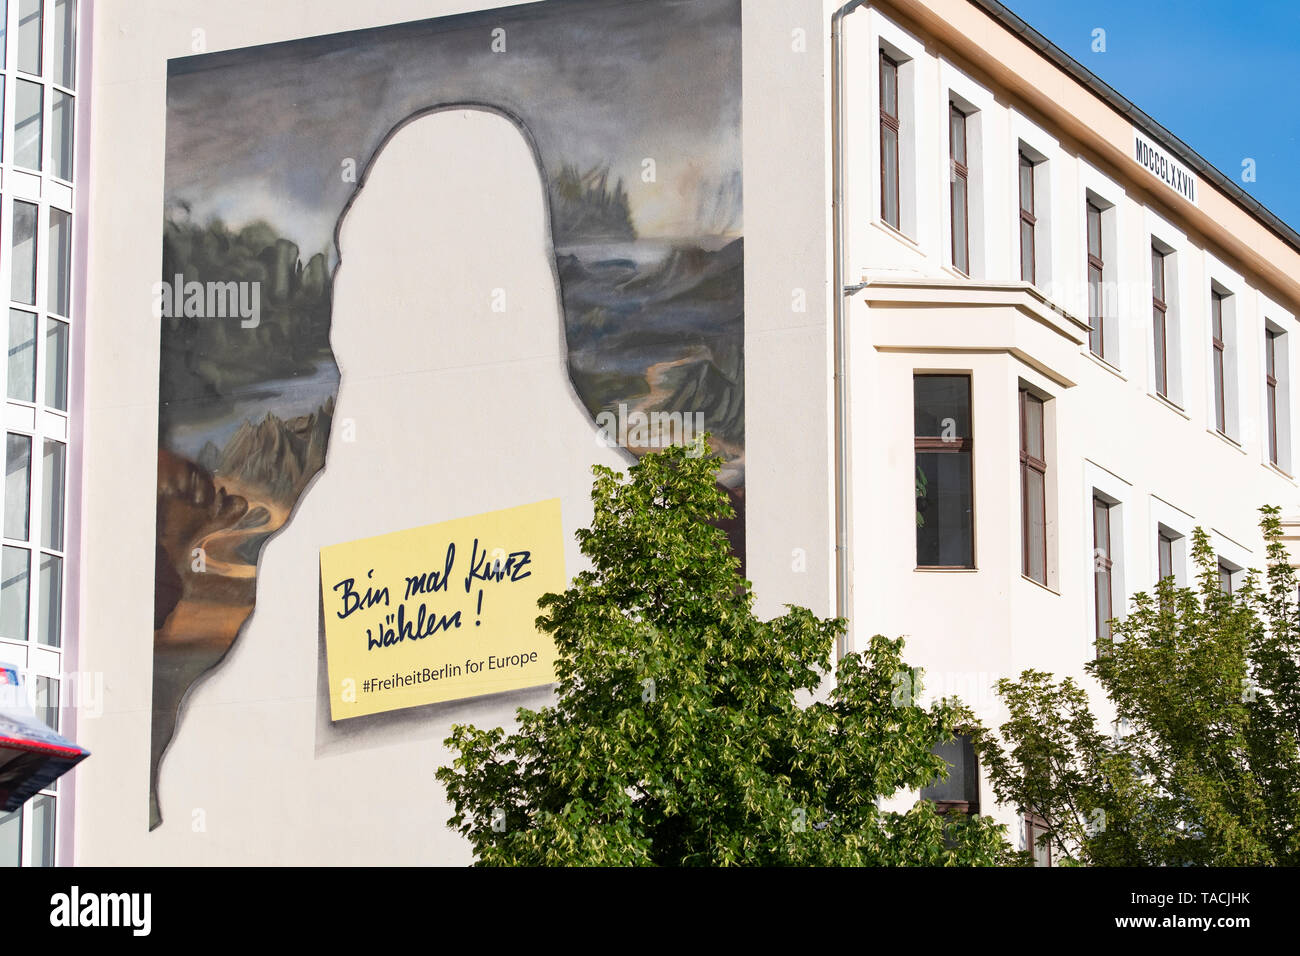 24 de mayo de 2019, Berlín: los contornos de la Mona Lisa puede verse en una pared de la casa en Kreuzberg. Ella dejó una nota que decía, "Voy a ser breve." Esto fomentará la participación en las elecciones europeas del domingo. Foto: Paul Zinken/dpa Foto de stock